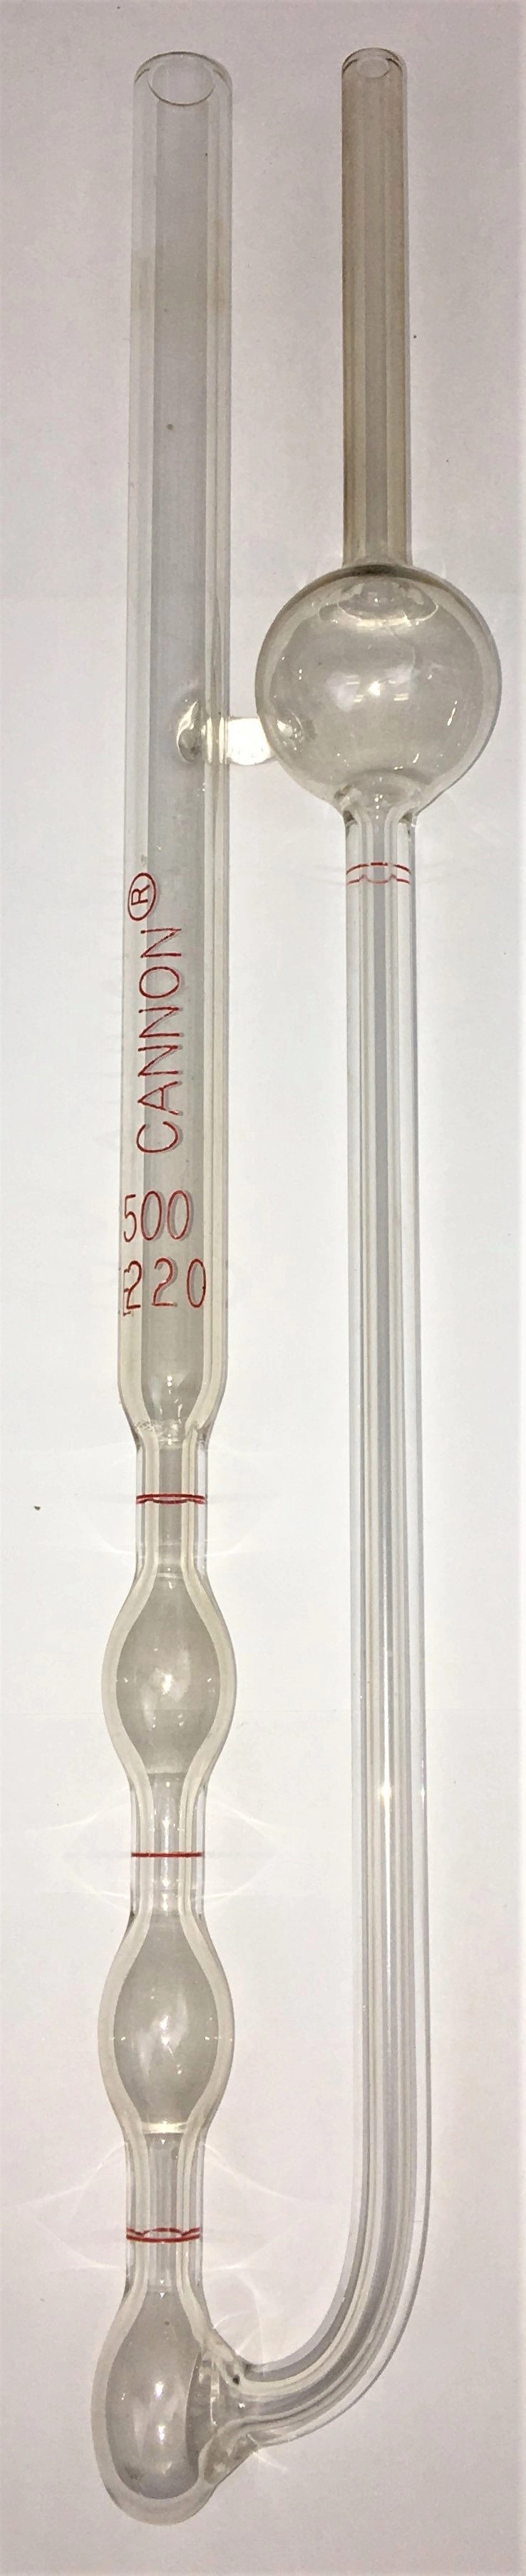 Cannon-Fenske CFOC-500 Opaque Viscometer Tube (No Certificate) - Size 500